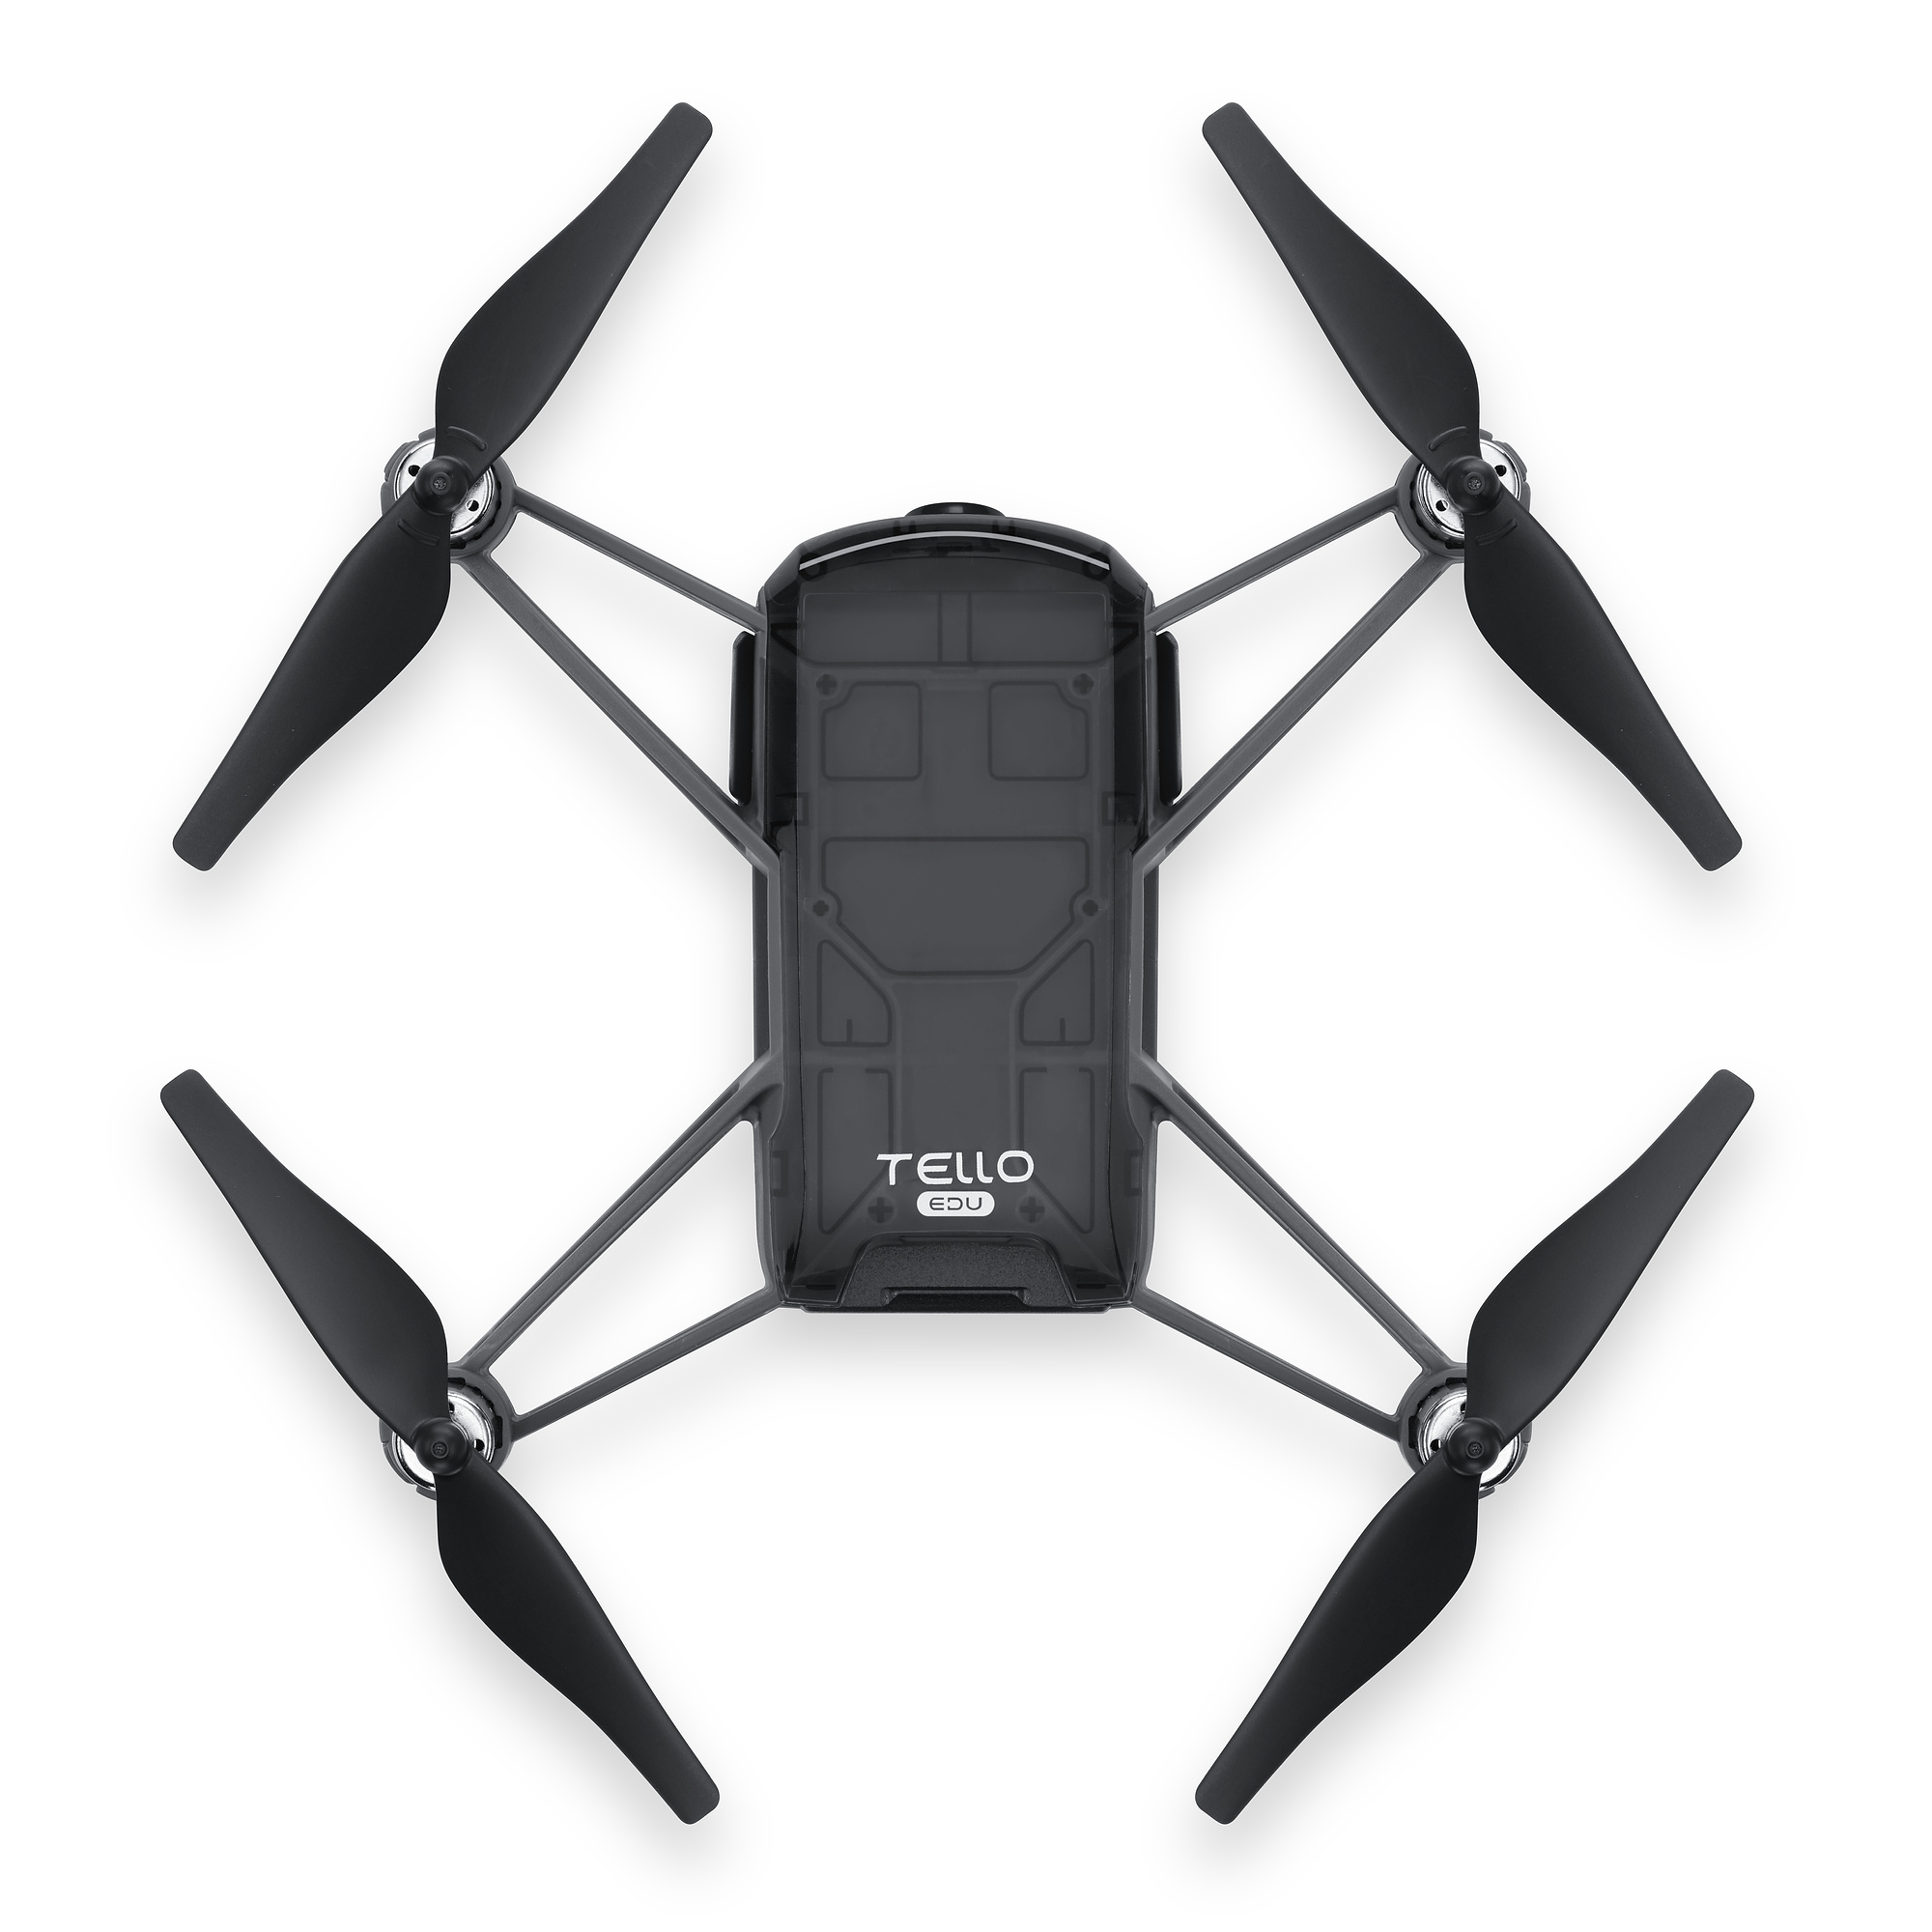 DJI Tello EDU drone til uddannelsesmæssige formål